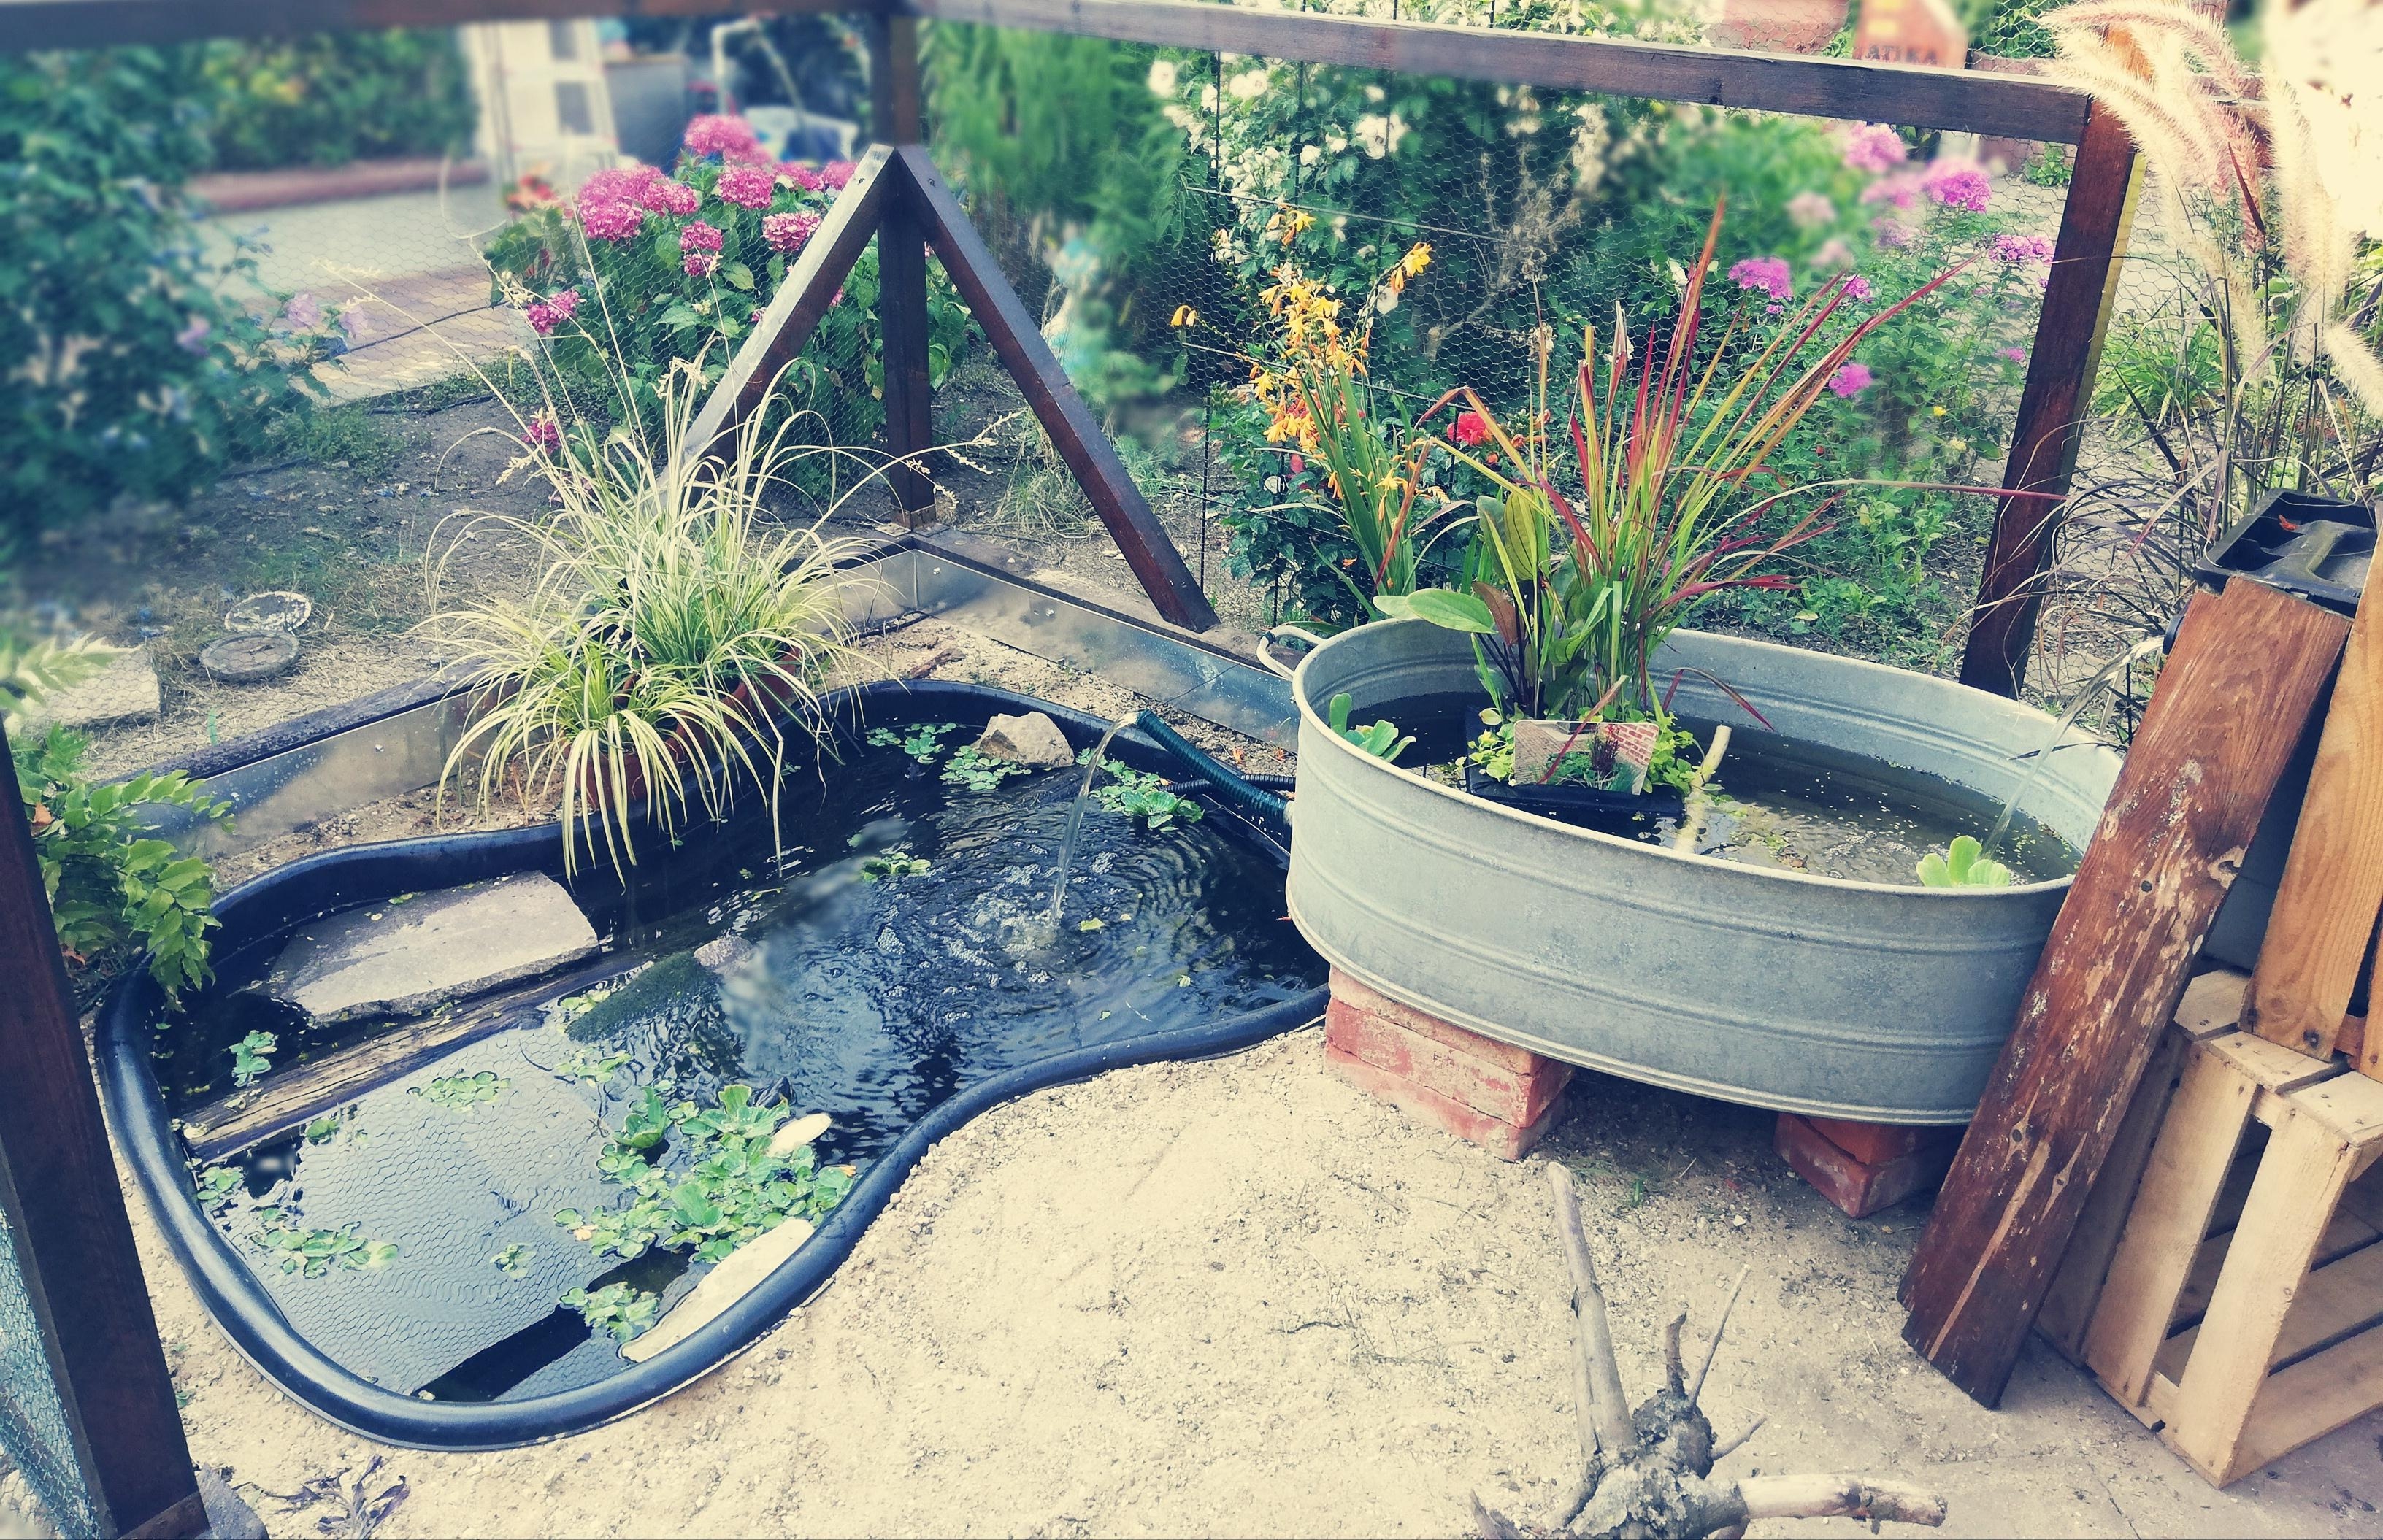 Gartenzeit ist schöne Zeit... Unser Katzenfreigehege mit Teich #FrischluftFürDieStubentiger